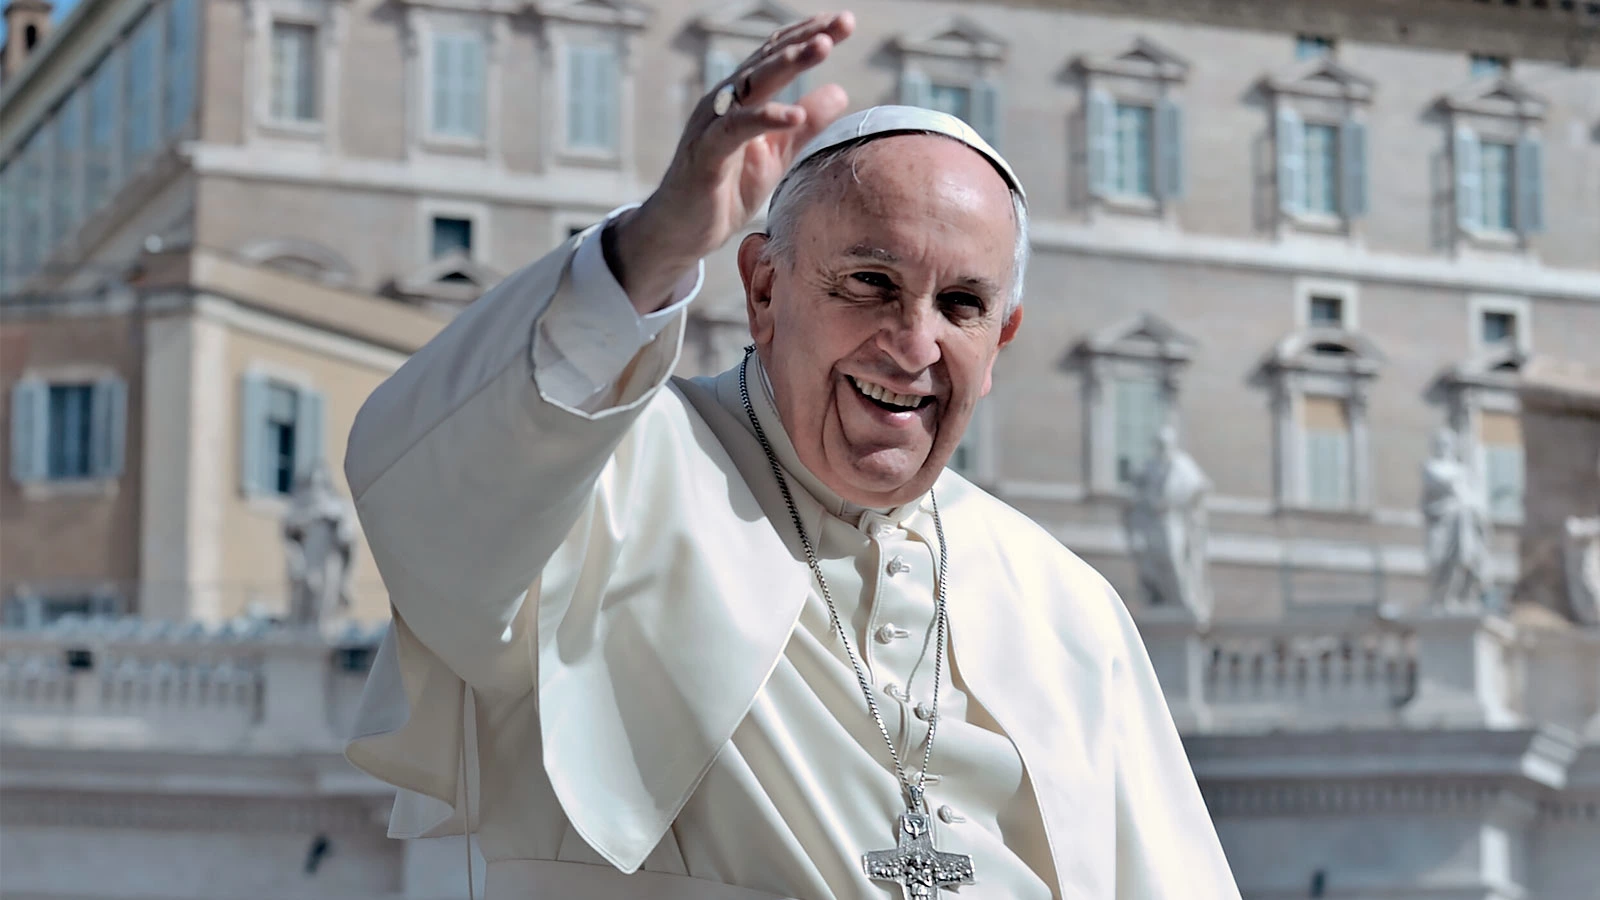 Биография Папы Римского Франциска: интересные факты о жизни и деятельности